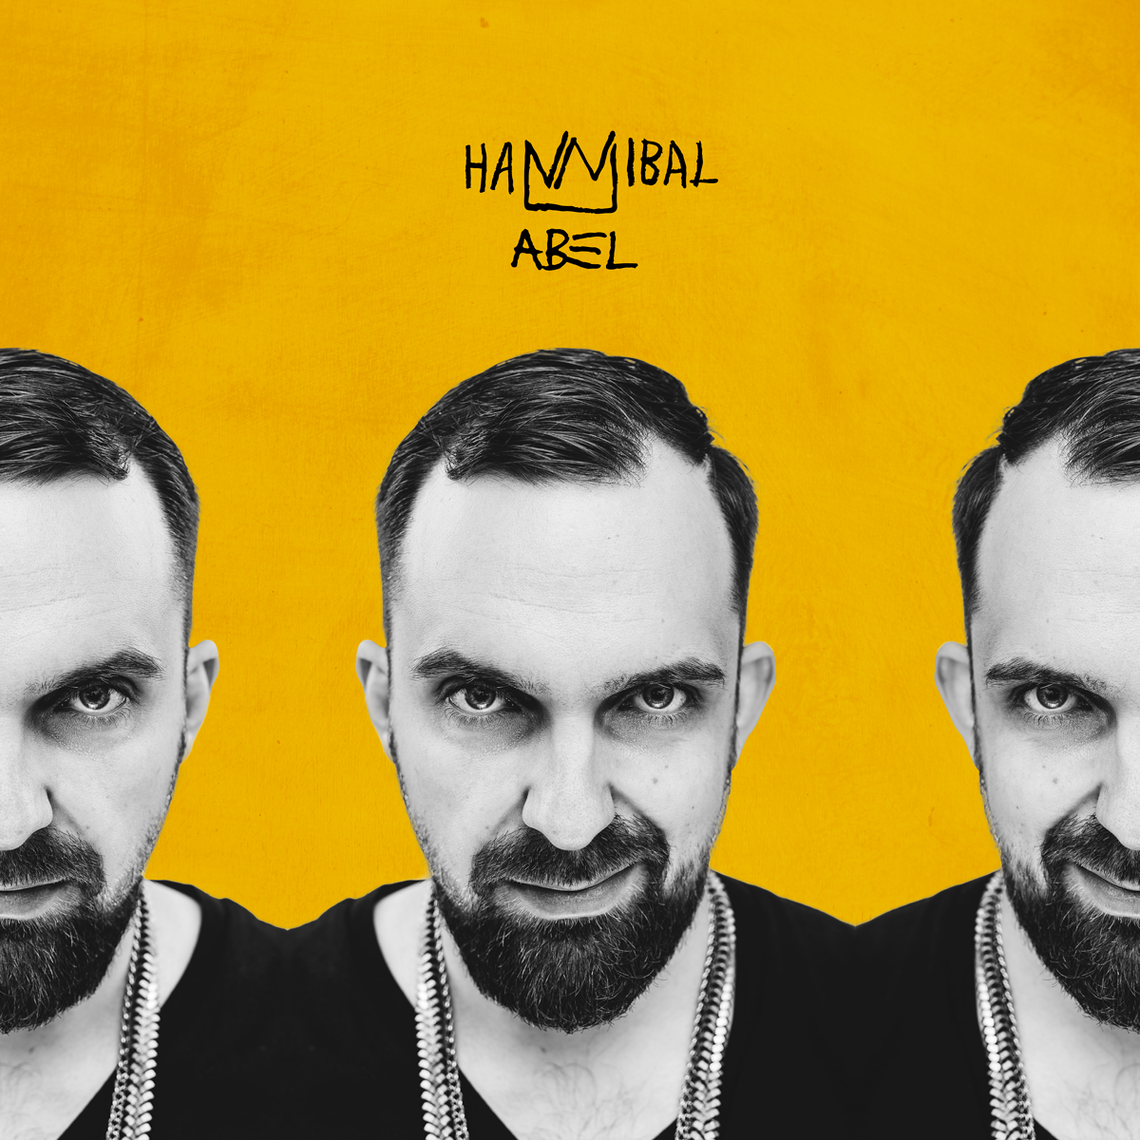 Wytwórnia Wielkie Joł zaprezentowała okładkę i datę premiery drugiej solowej płyty ABLA zatytułowanej "HANNIBAL”.